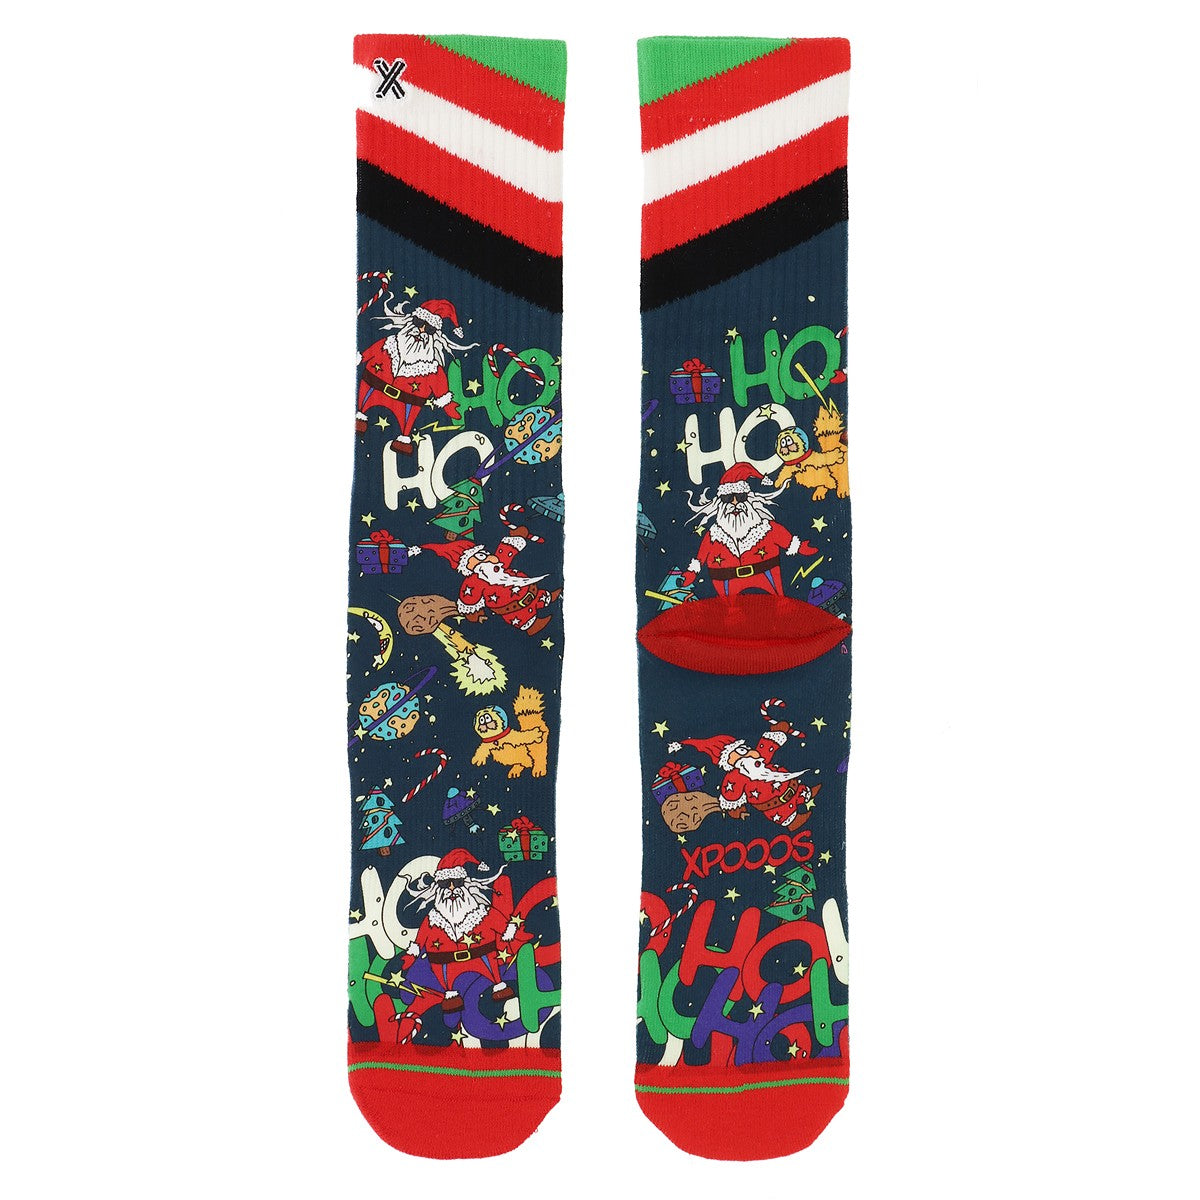 XPOOOS Socken Floating Santa